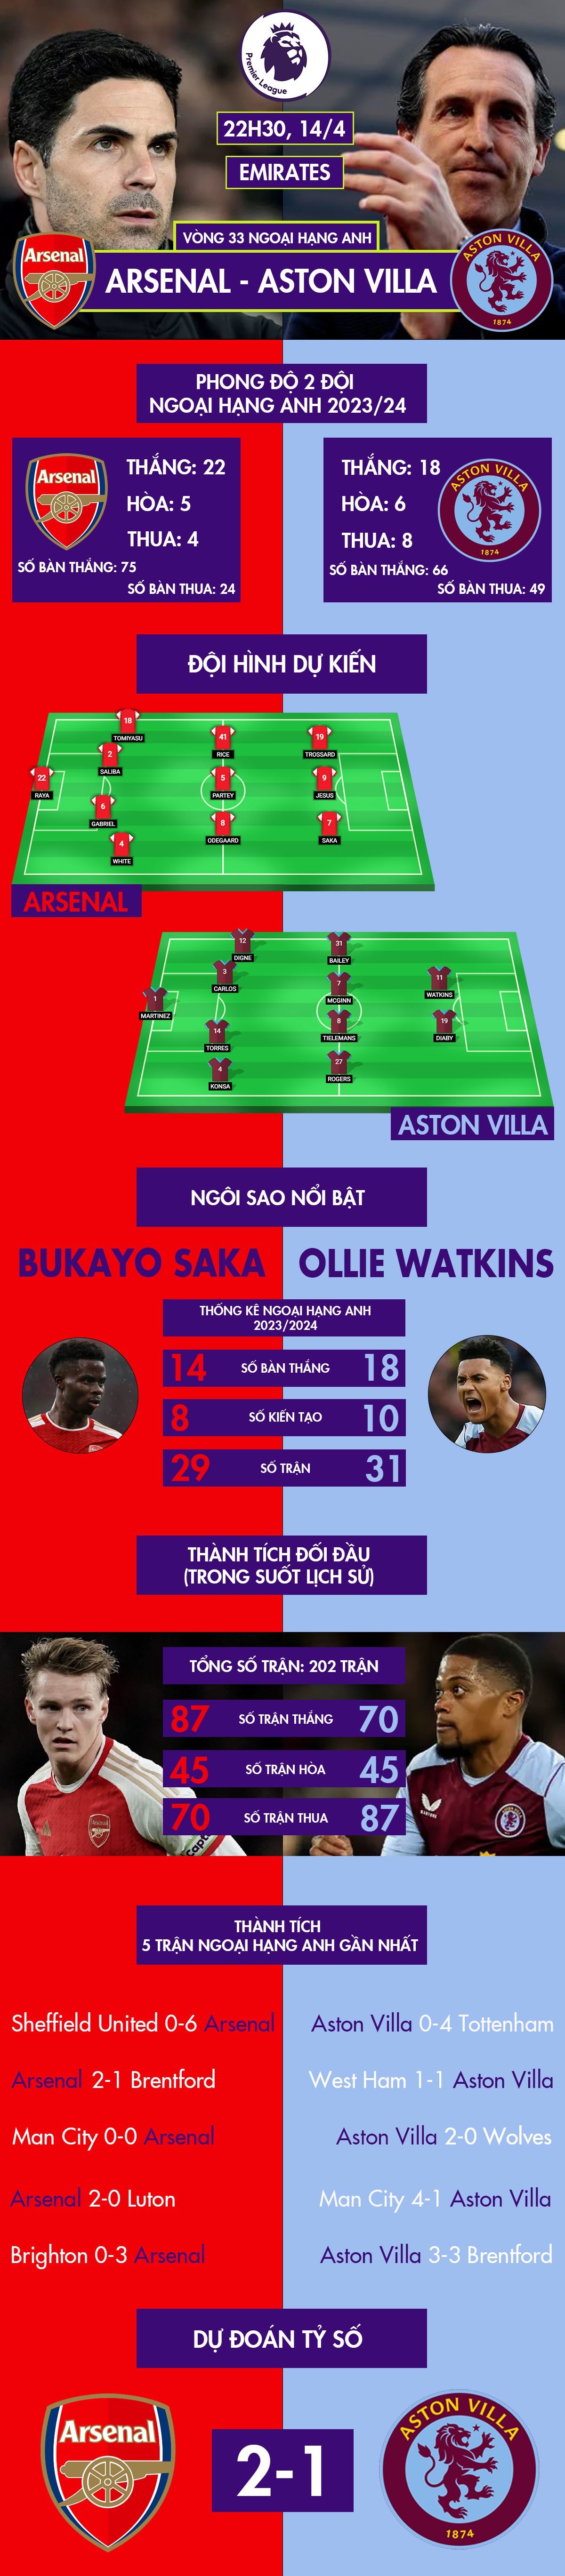 Nhận định bóng đá Arsenal - Aston Villa: Chiến đấu vì ngôi đầu (Ngoại hạng Anh) - 1